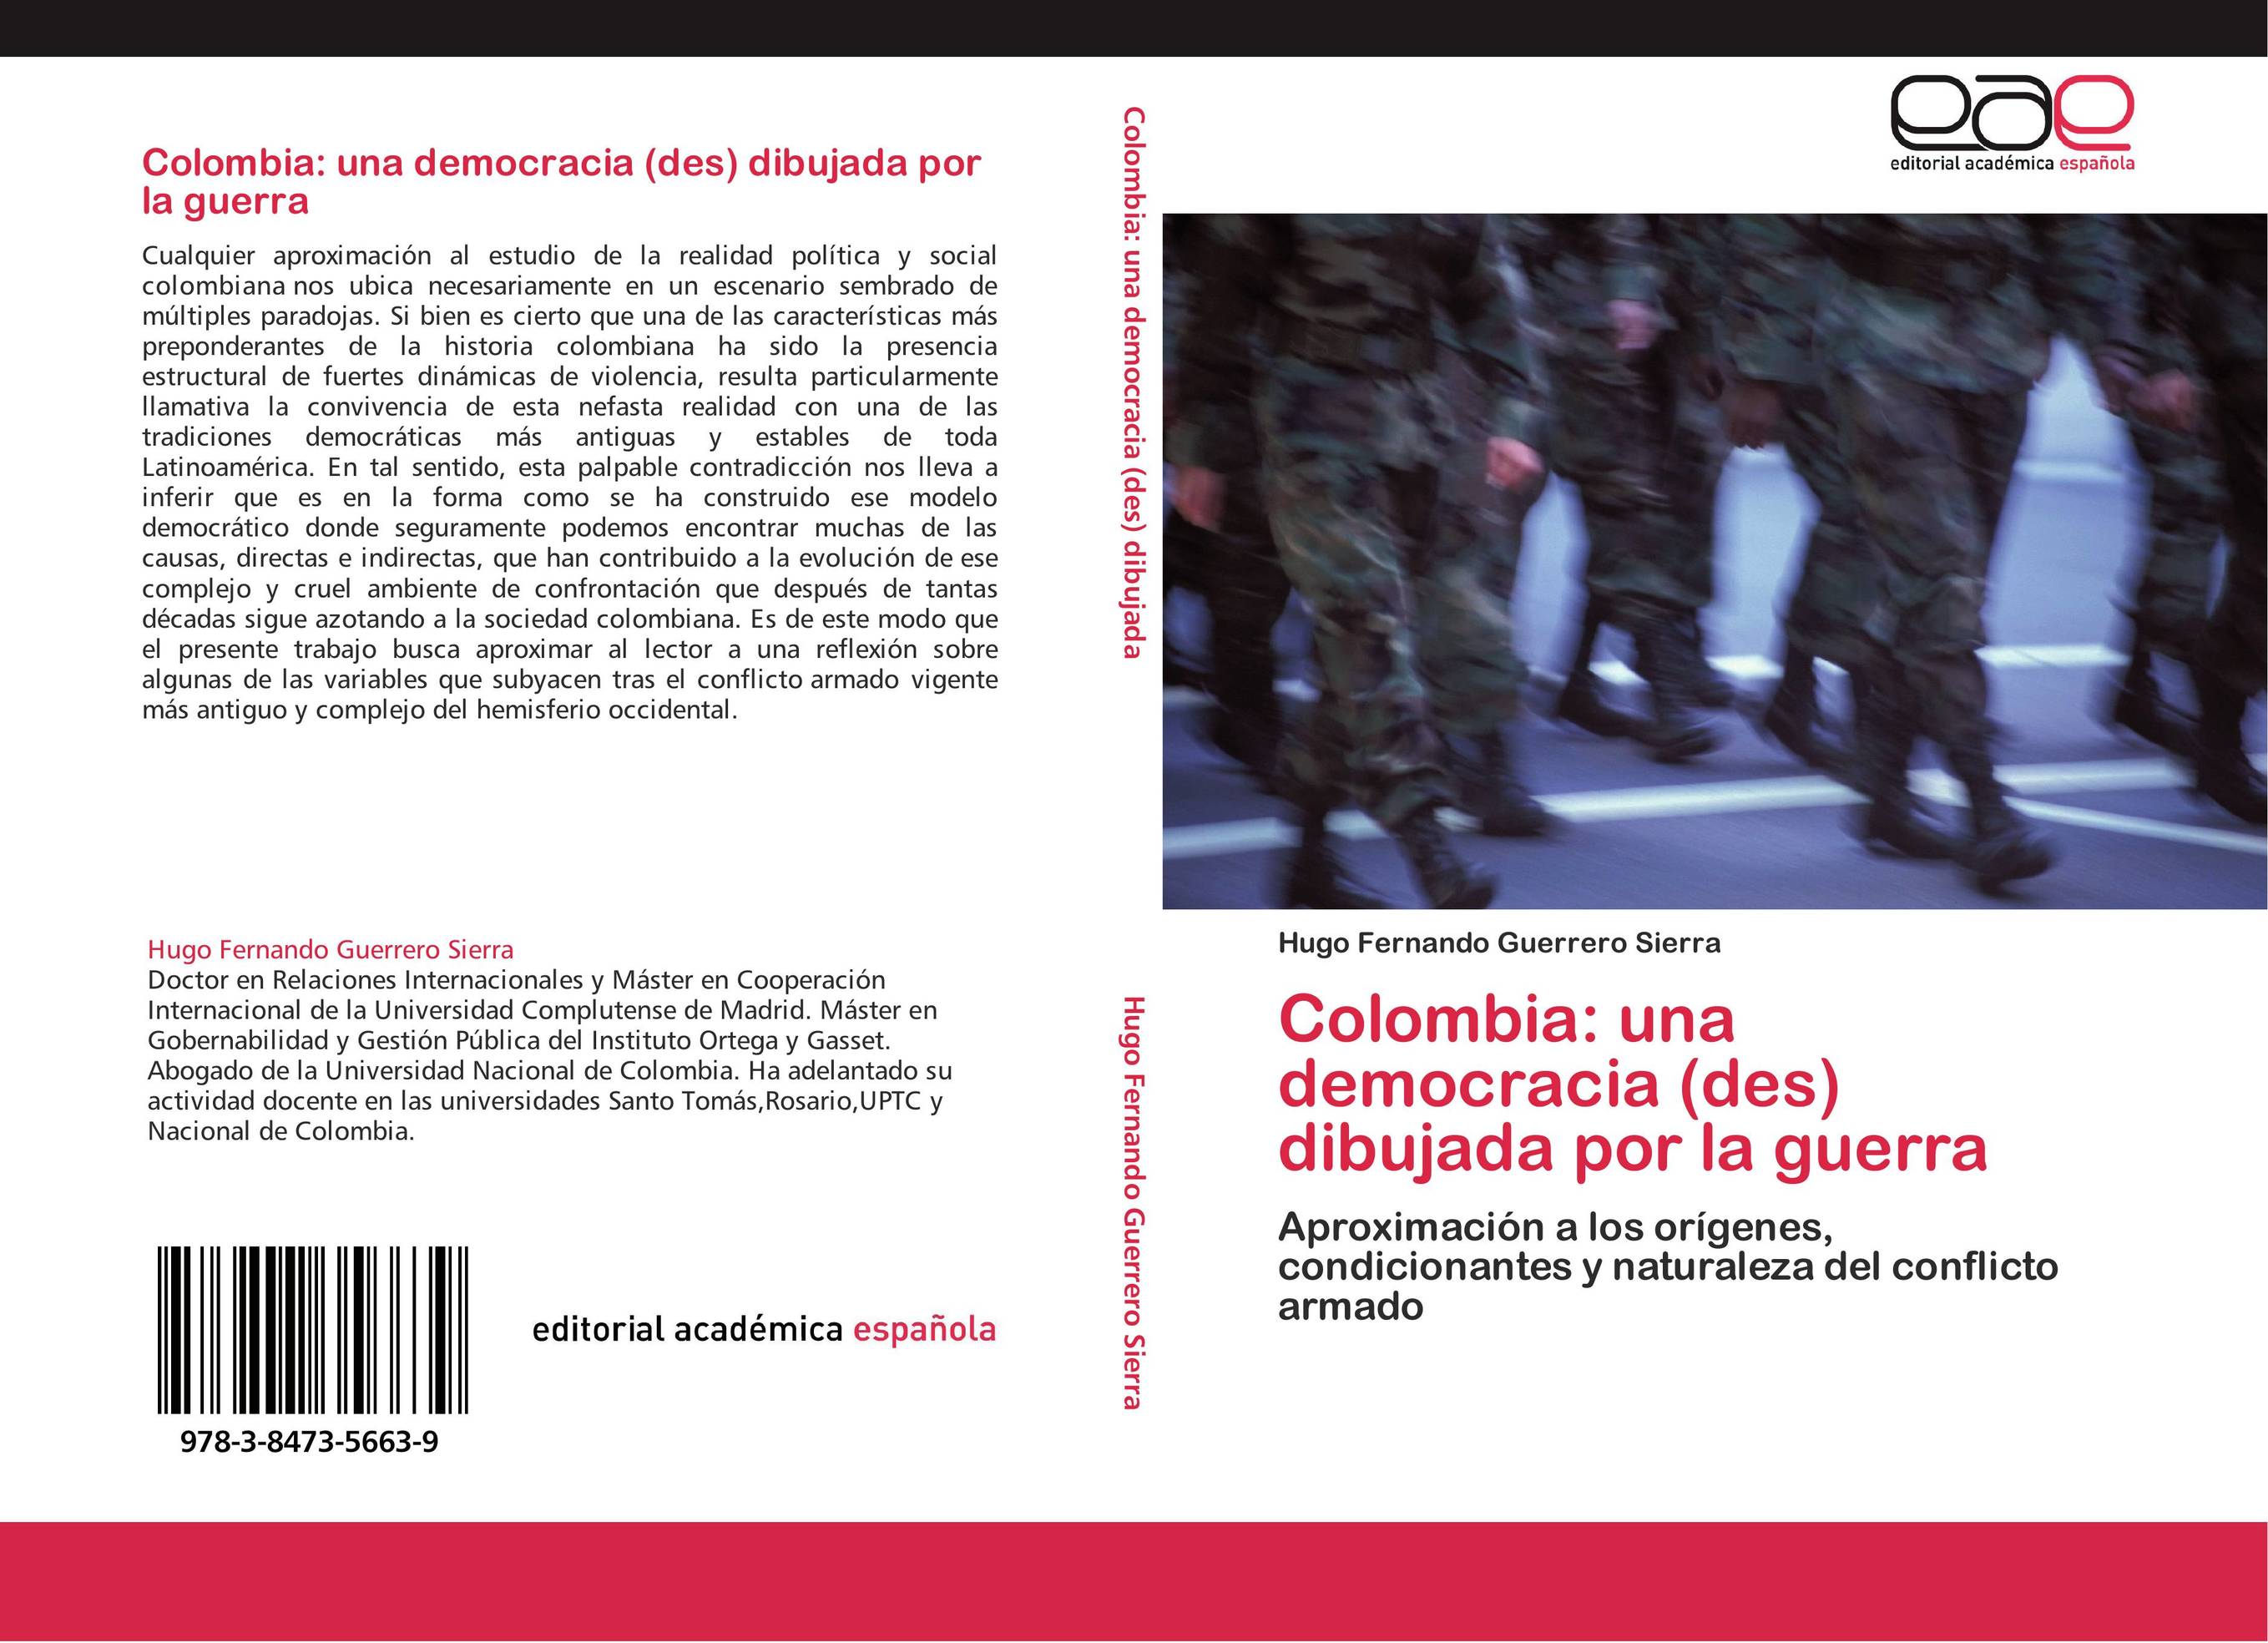 Colombia: una democracia (des) dibujada por la guerra